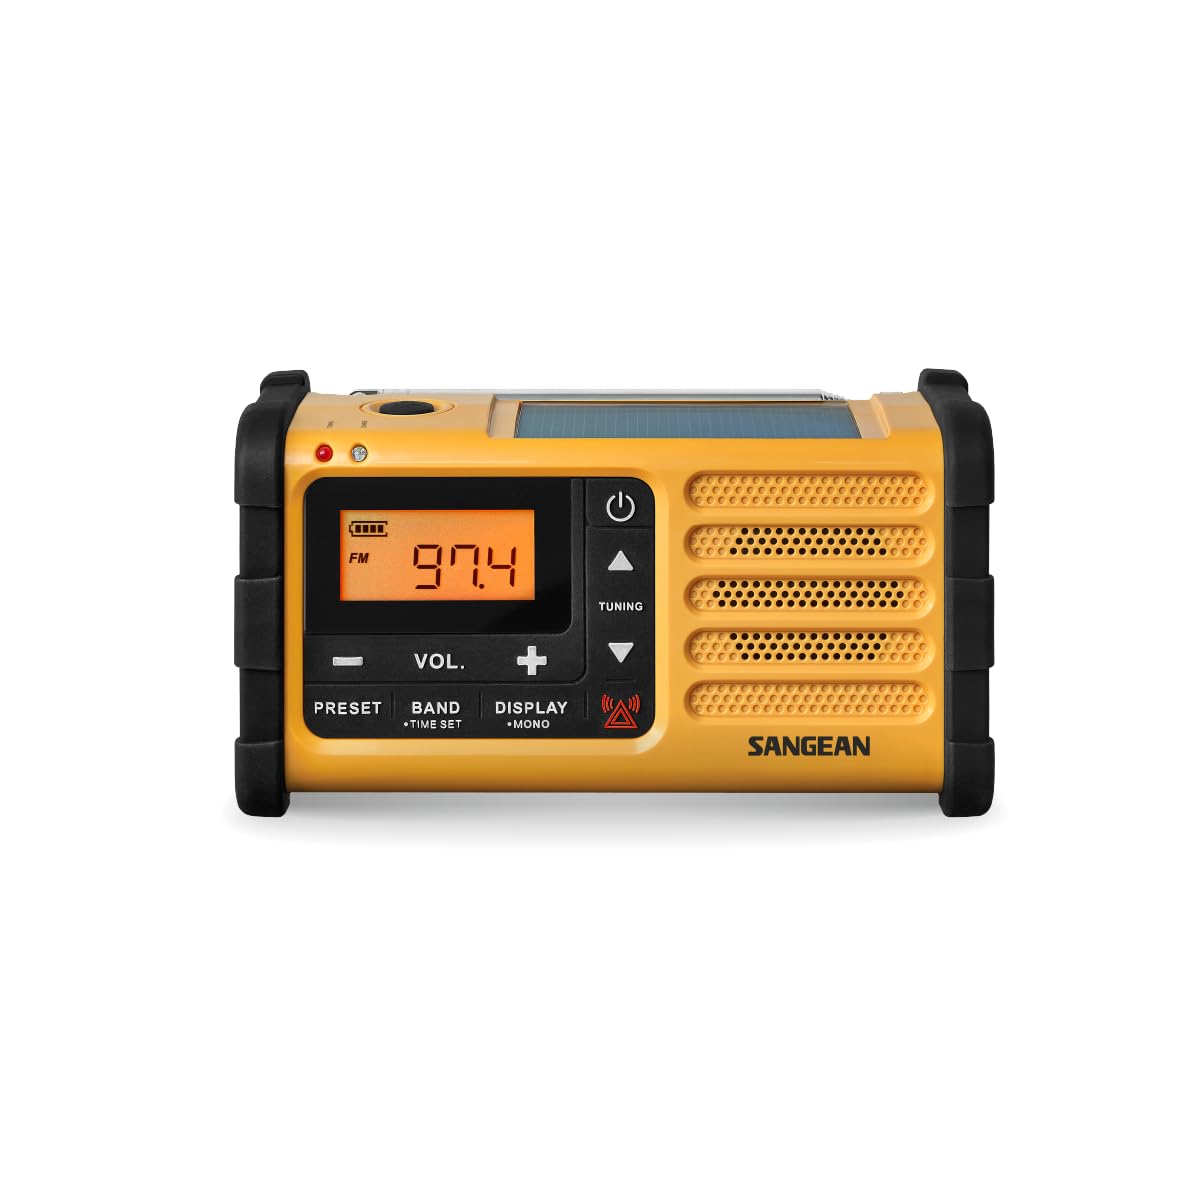 Sangean MMR-88 Tragbares Kurbelradio, Notfall radio mit Taschenlampe und Notfall-Signalton - UKW/MW-Tuner - Gelb/Schwarz